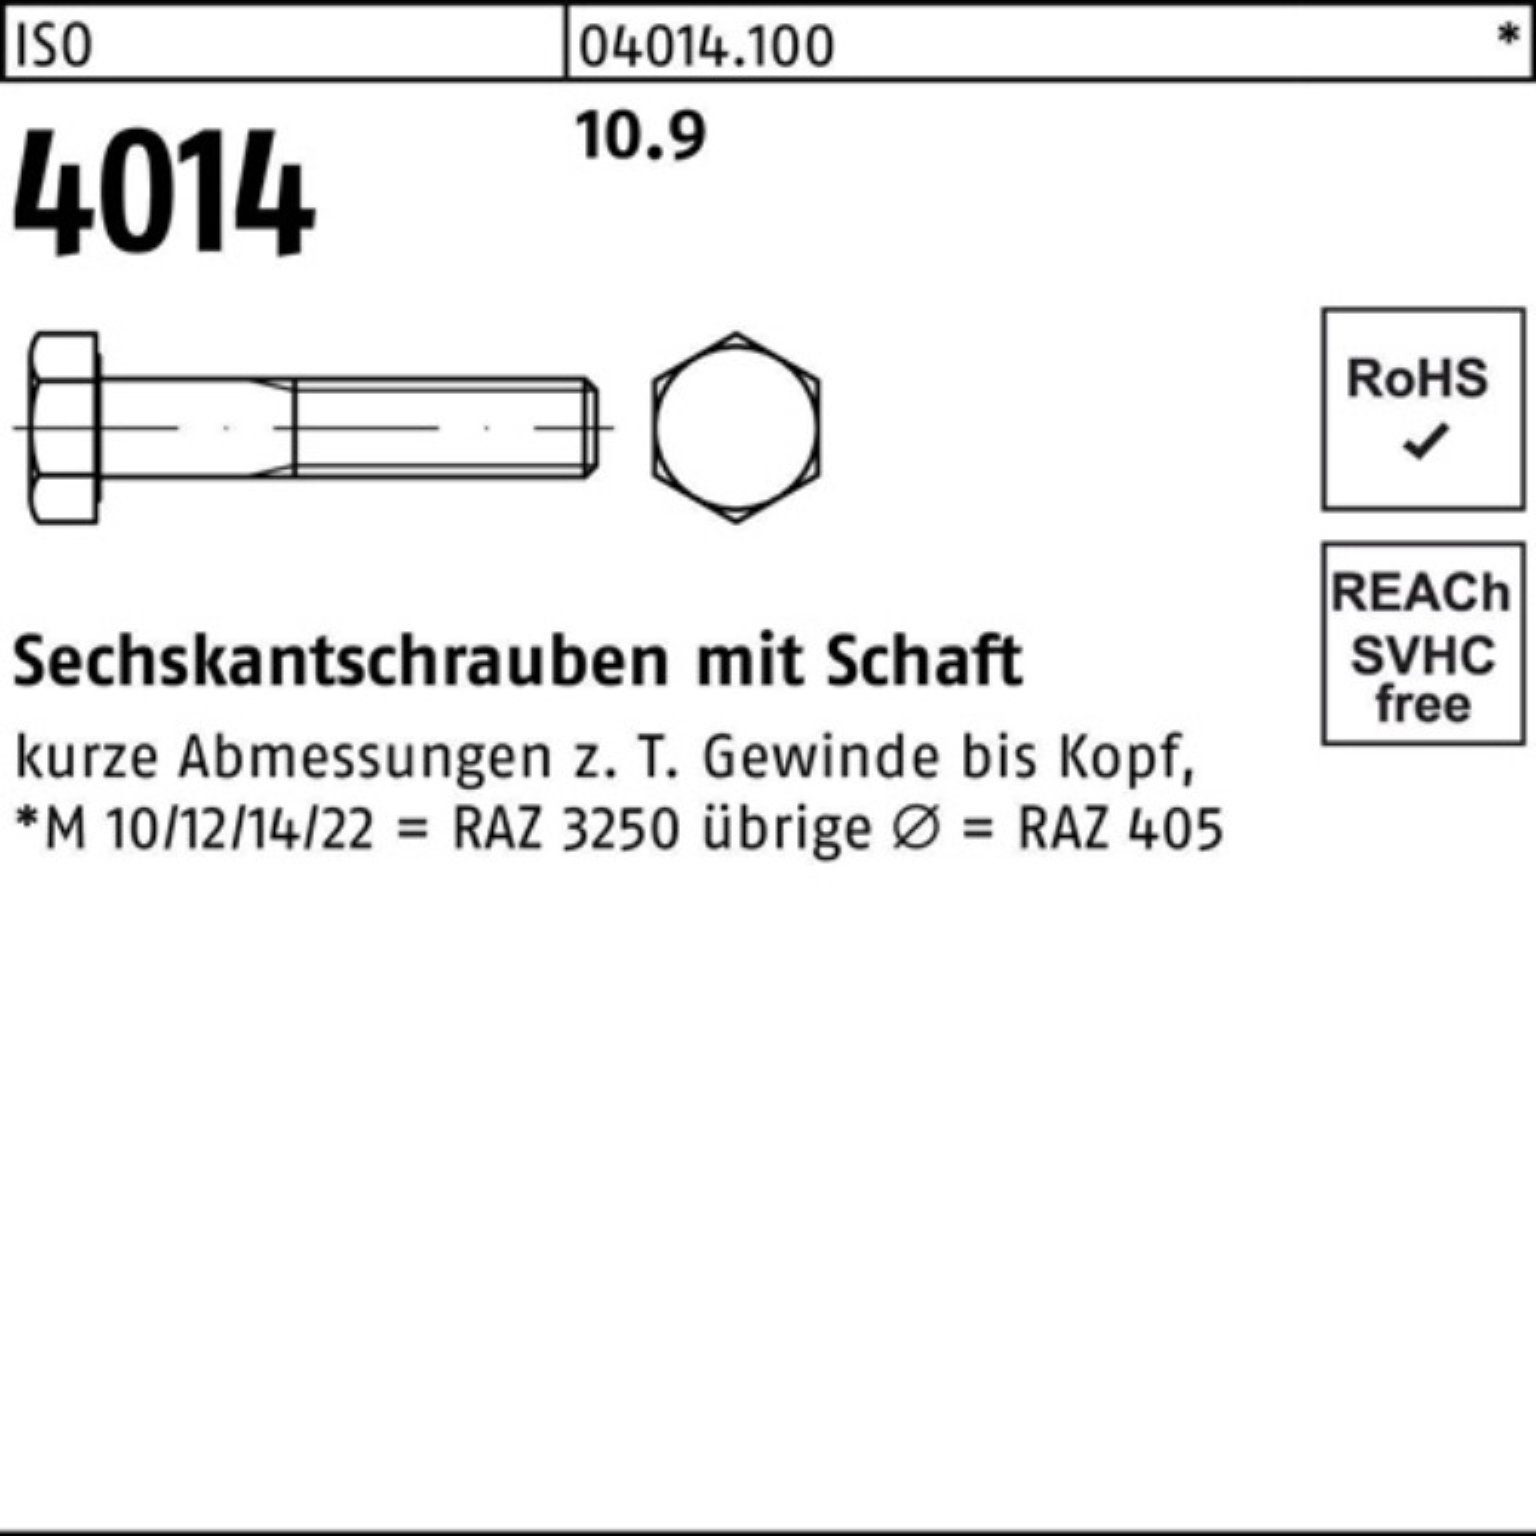 Schaft Sechskantschraube 1 4014 ISO IS 270 10.9 M27x Pack Sechskantschraube Bufab Stück 100er